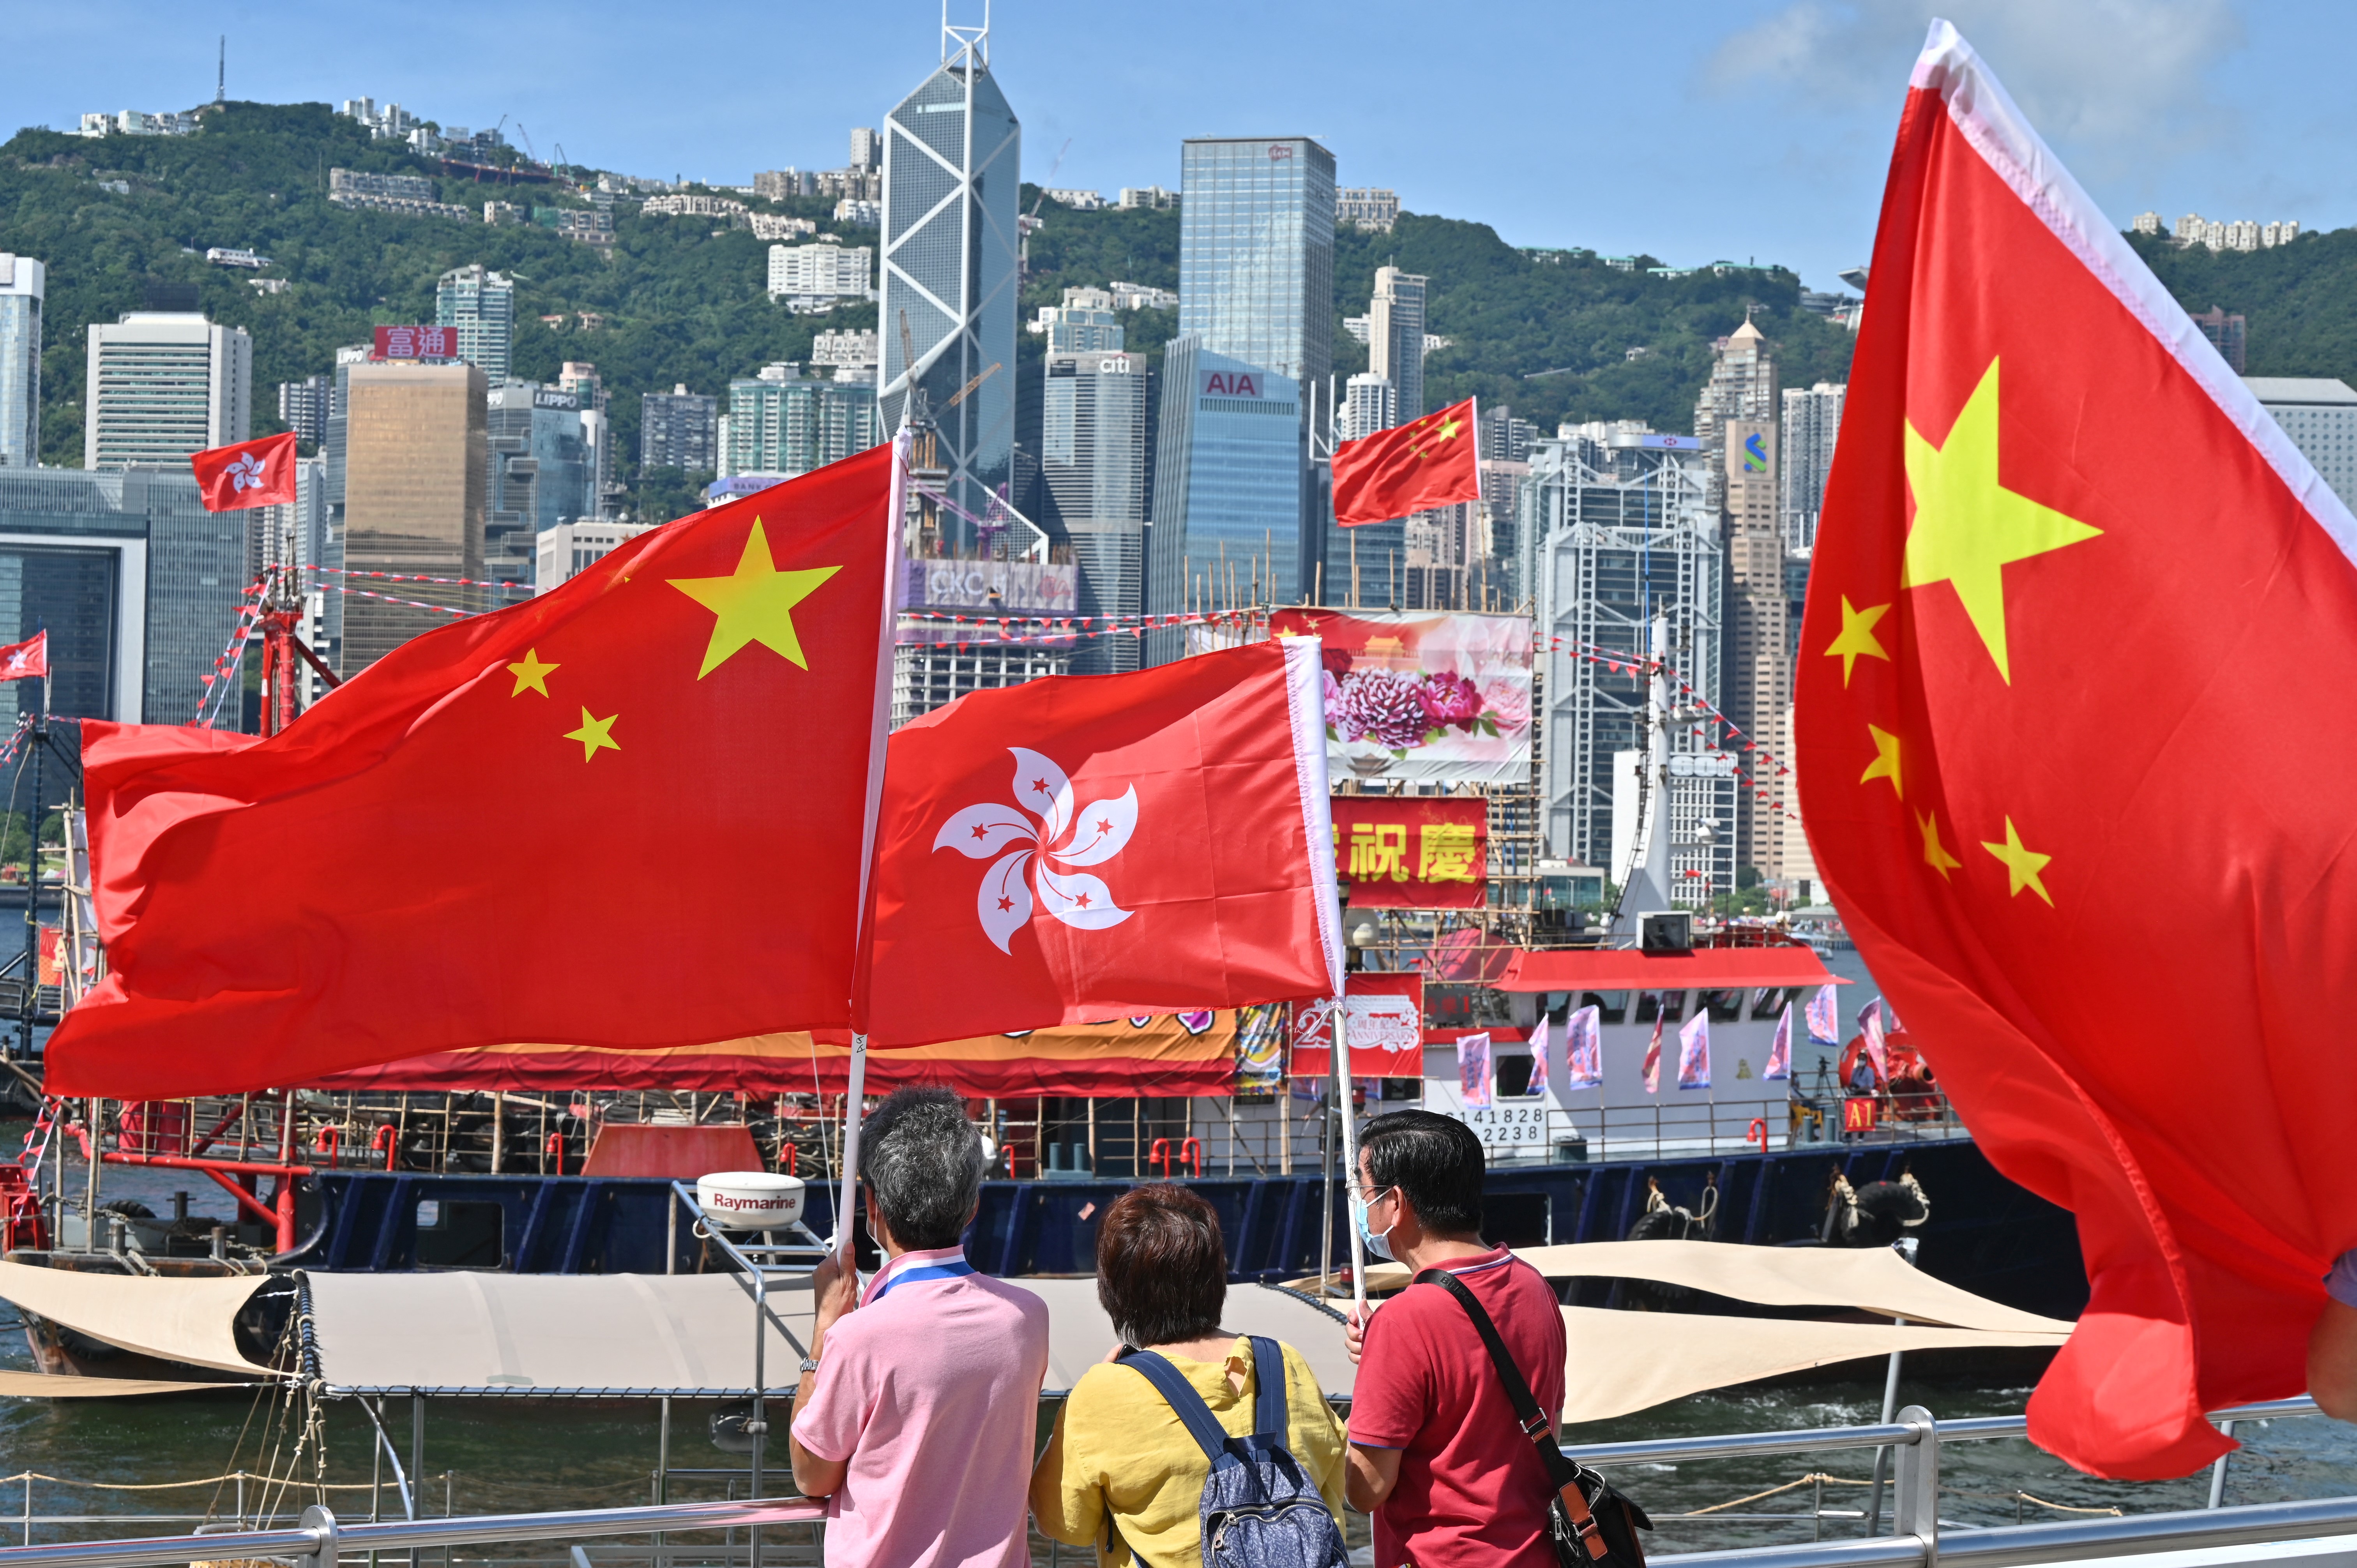 Hồng Kông sau 25 năm về Trung Quốc: Sóng gió và tương lai